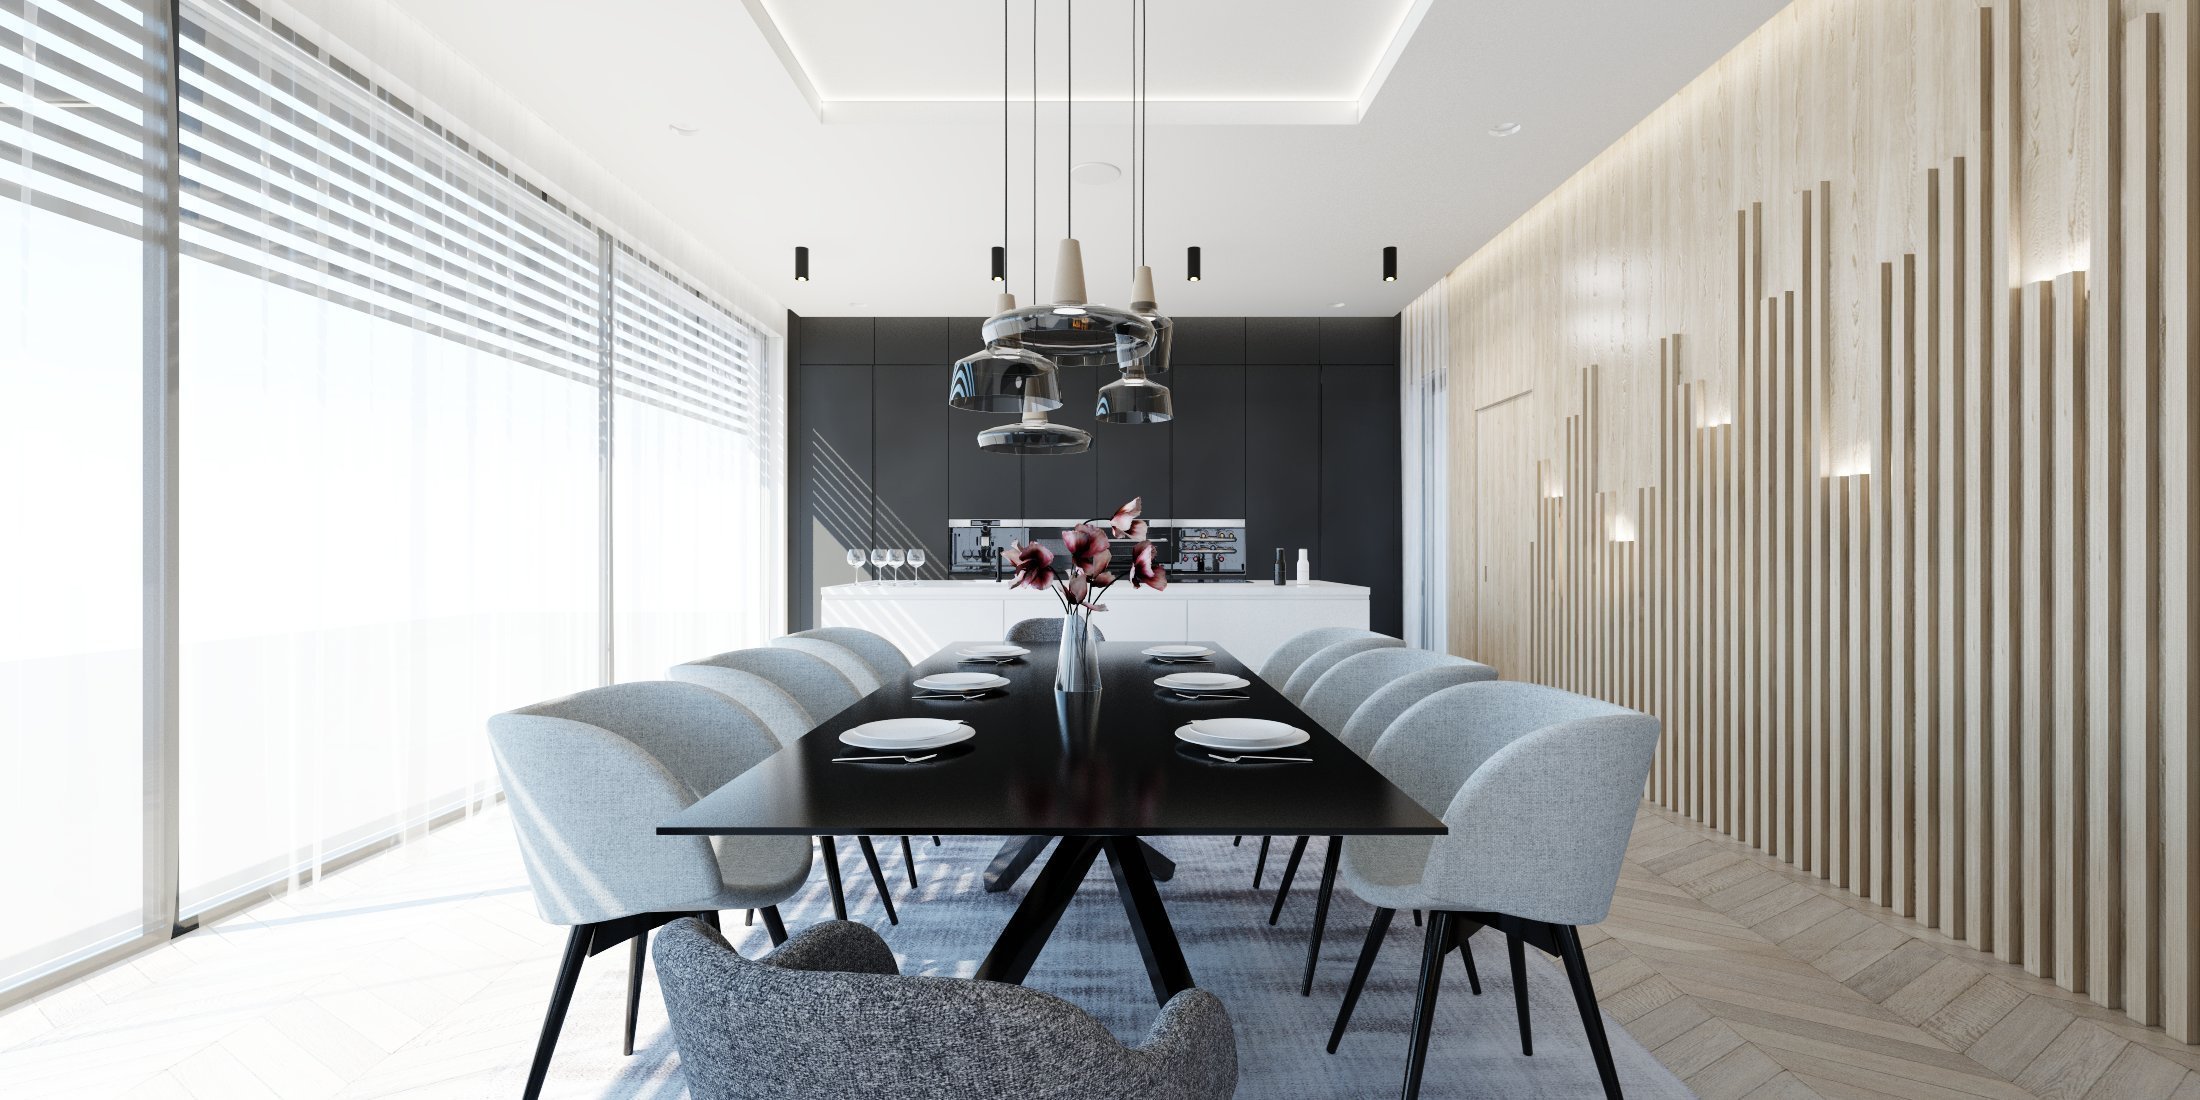 Minimalistický interiér rodinného domu,&nbsp;vyjadřuje touhu po volném prostoru s minimem nábytku.&nbsp;Čisté linie, jemné barvy, žádné vzory a jasné tvary.…